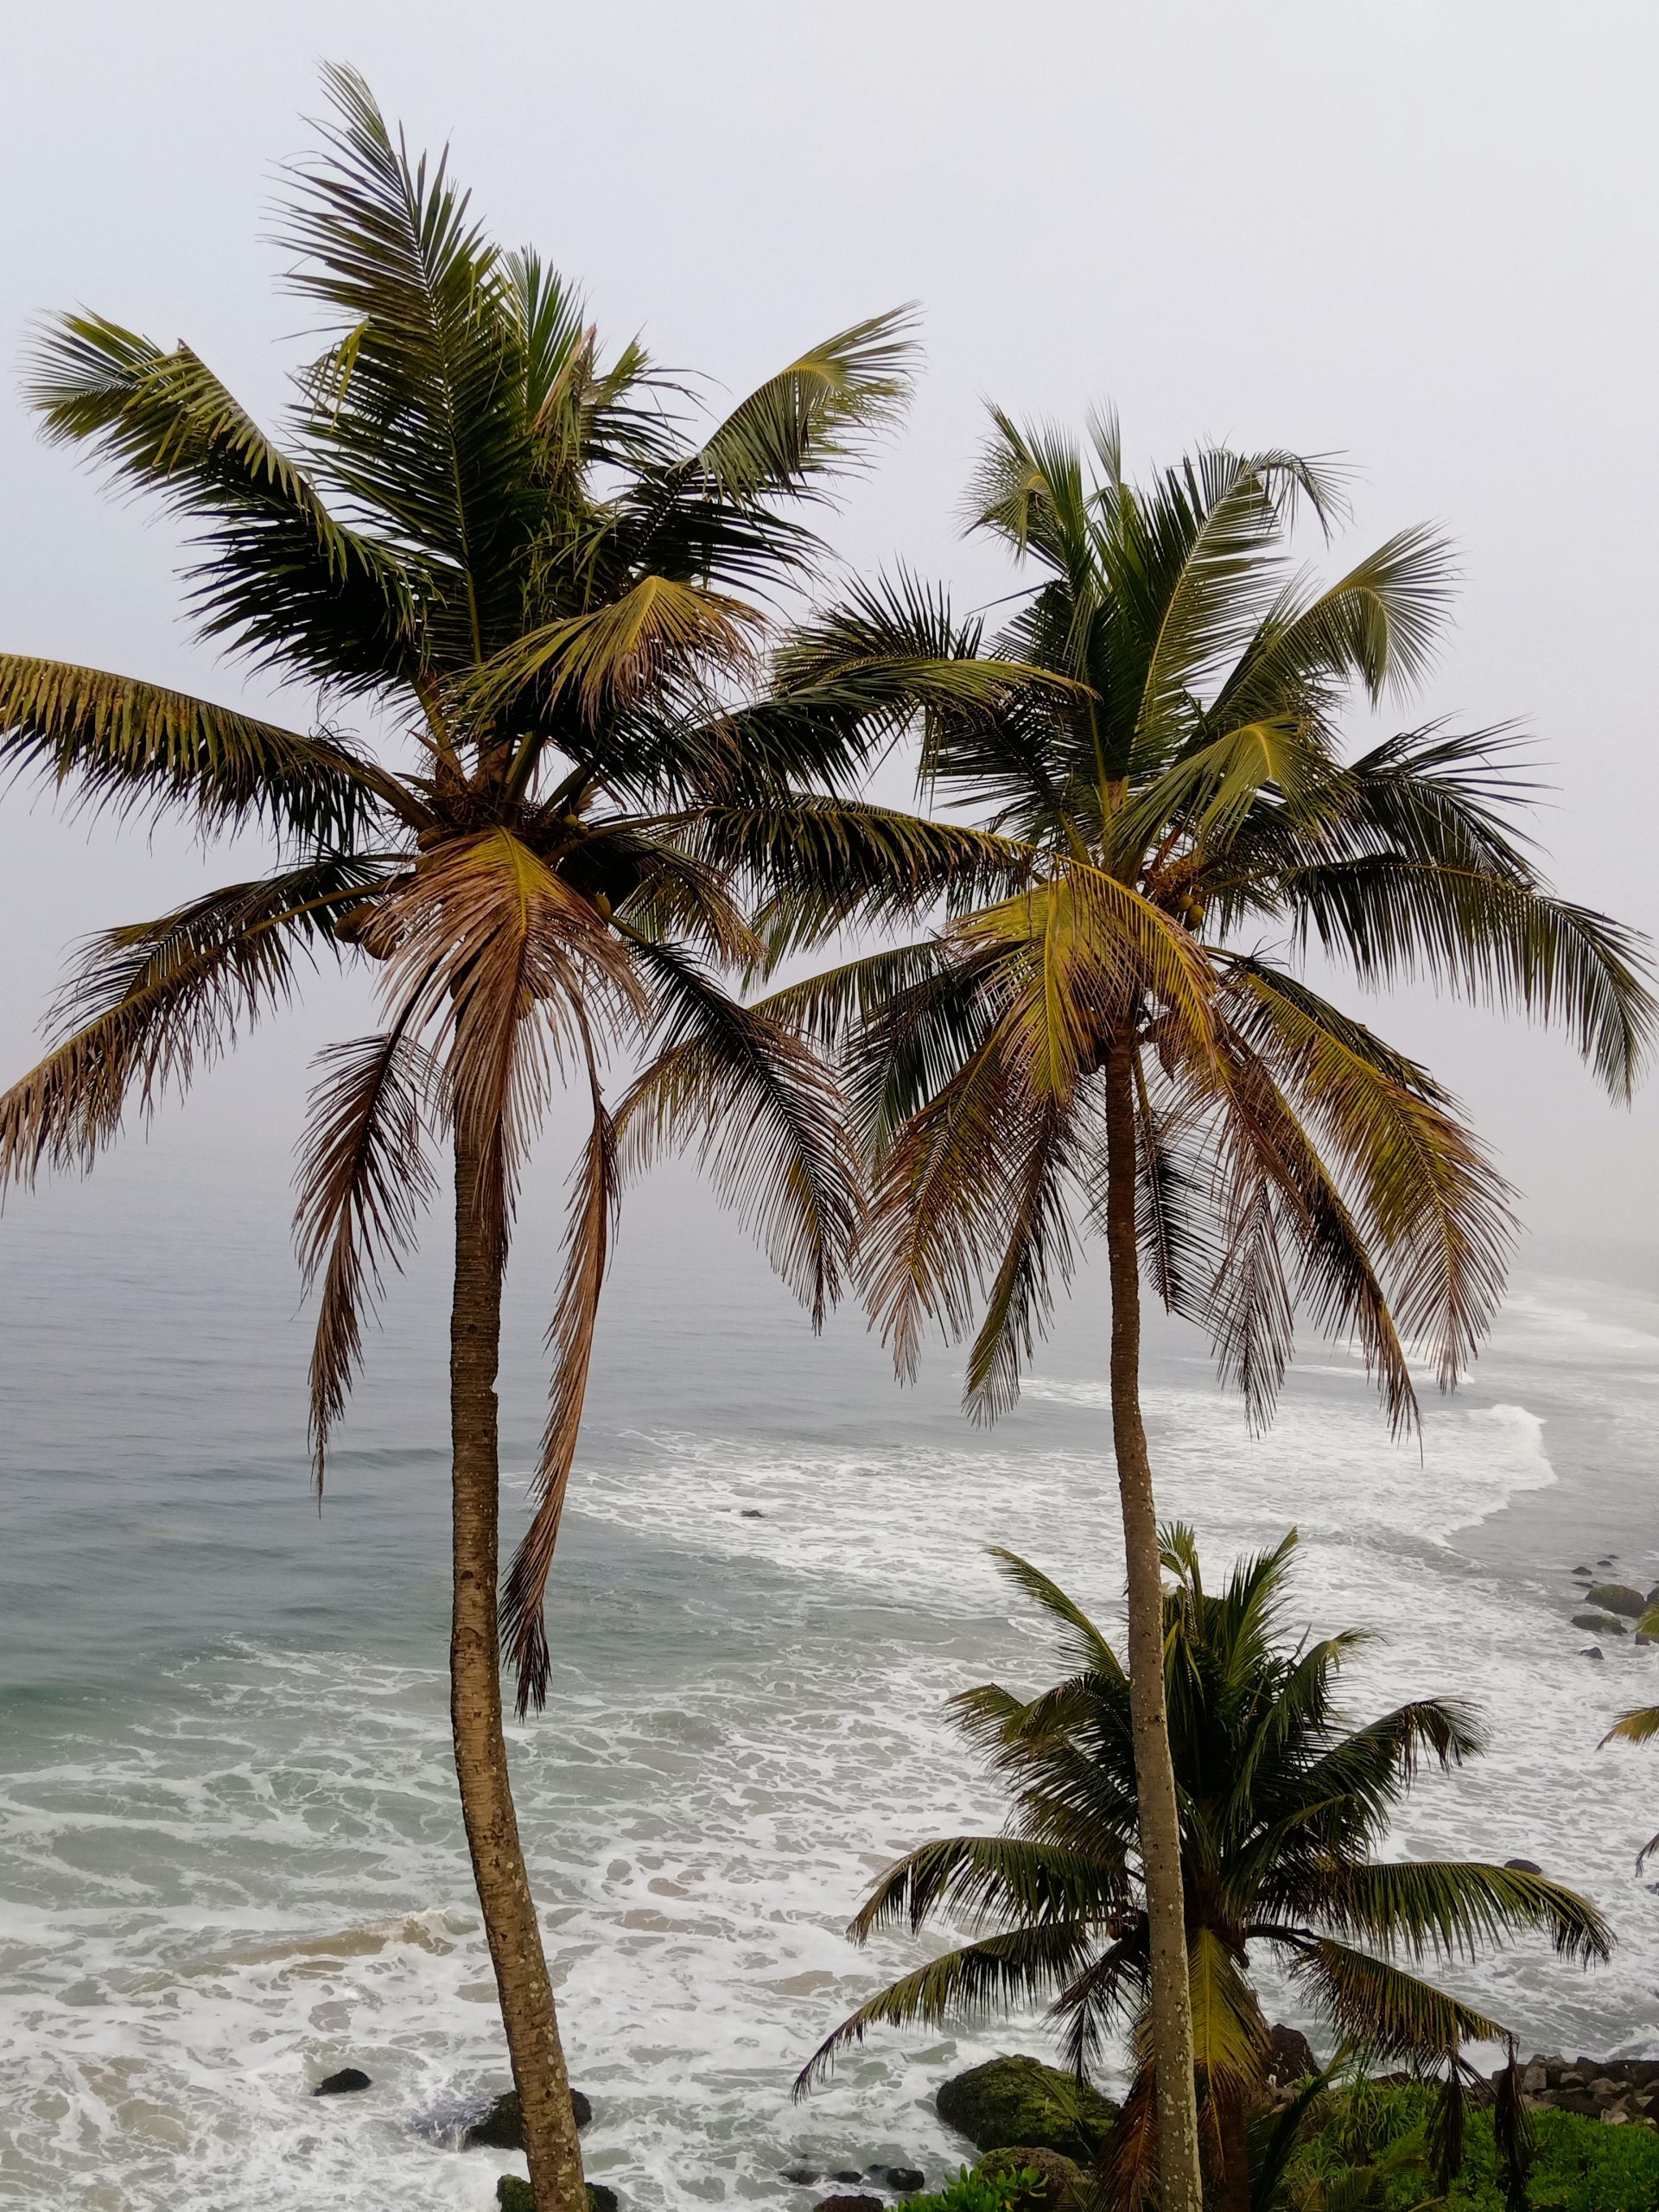 Palm trees near a beach